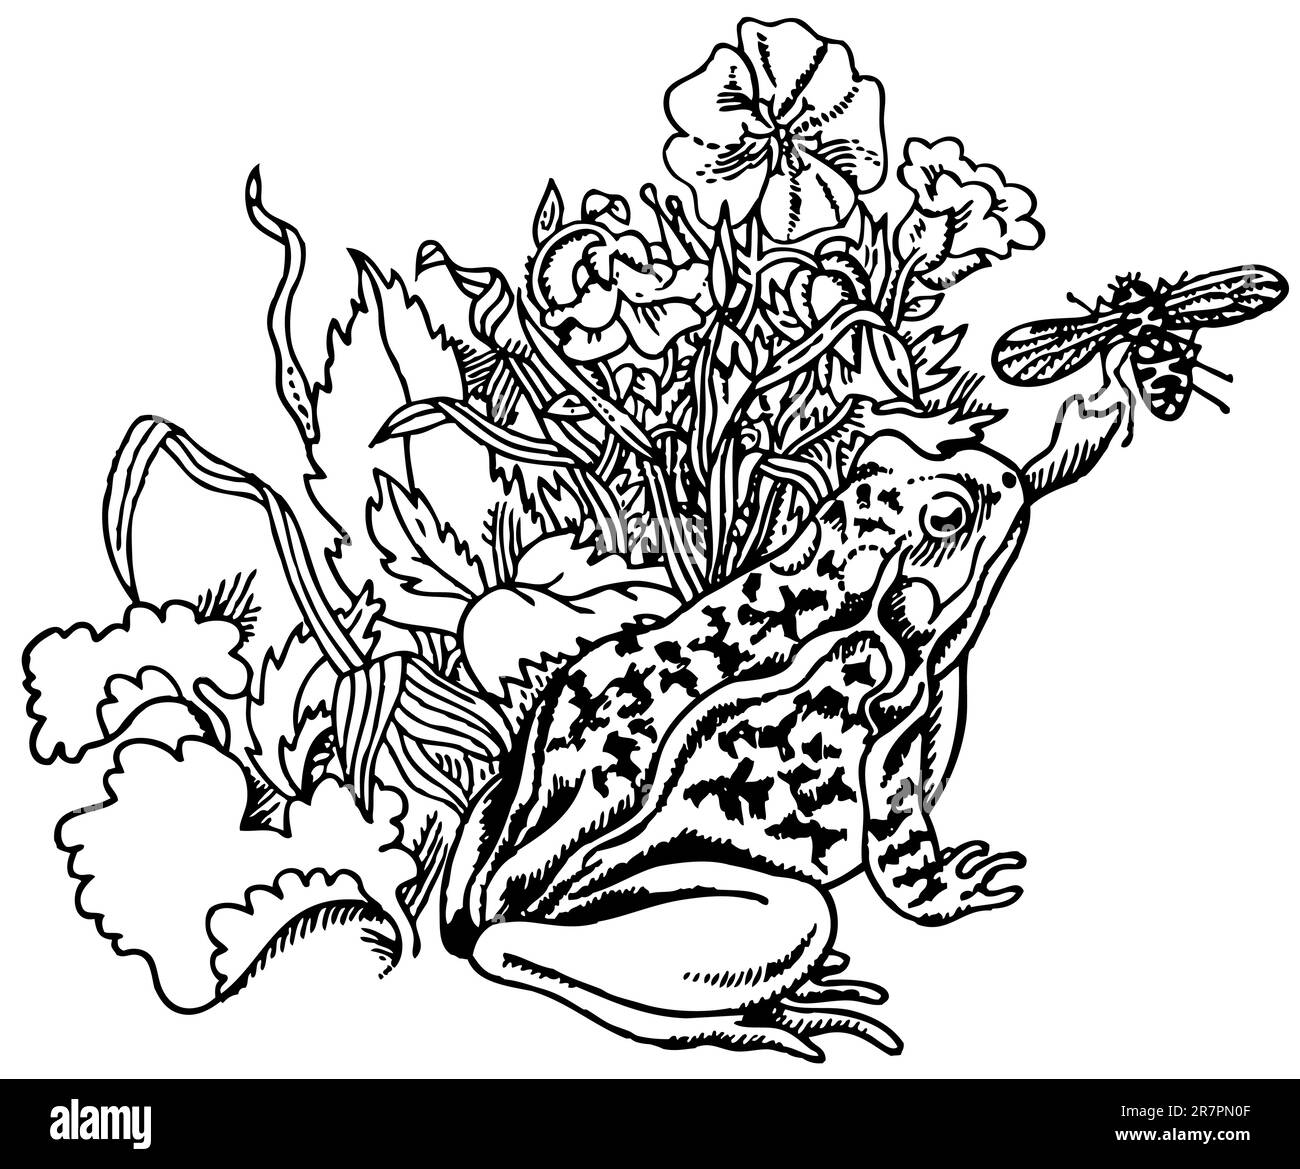 La capture de grenouilles fly Illustration de Vecteur